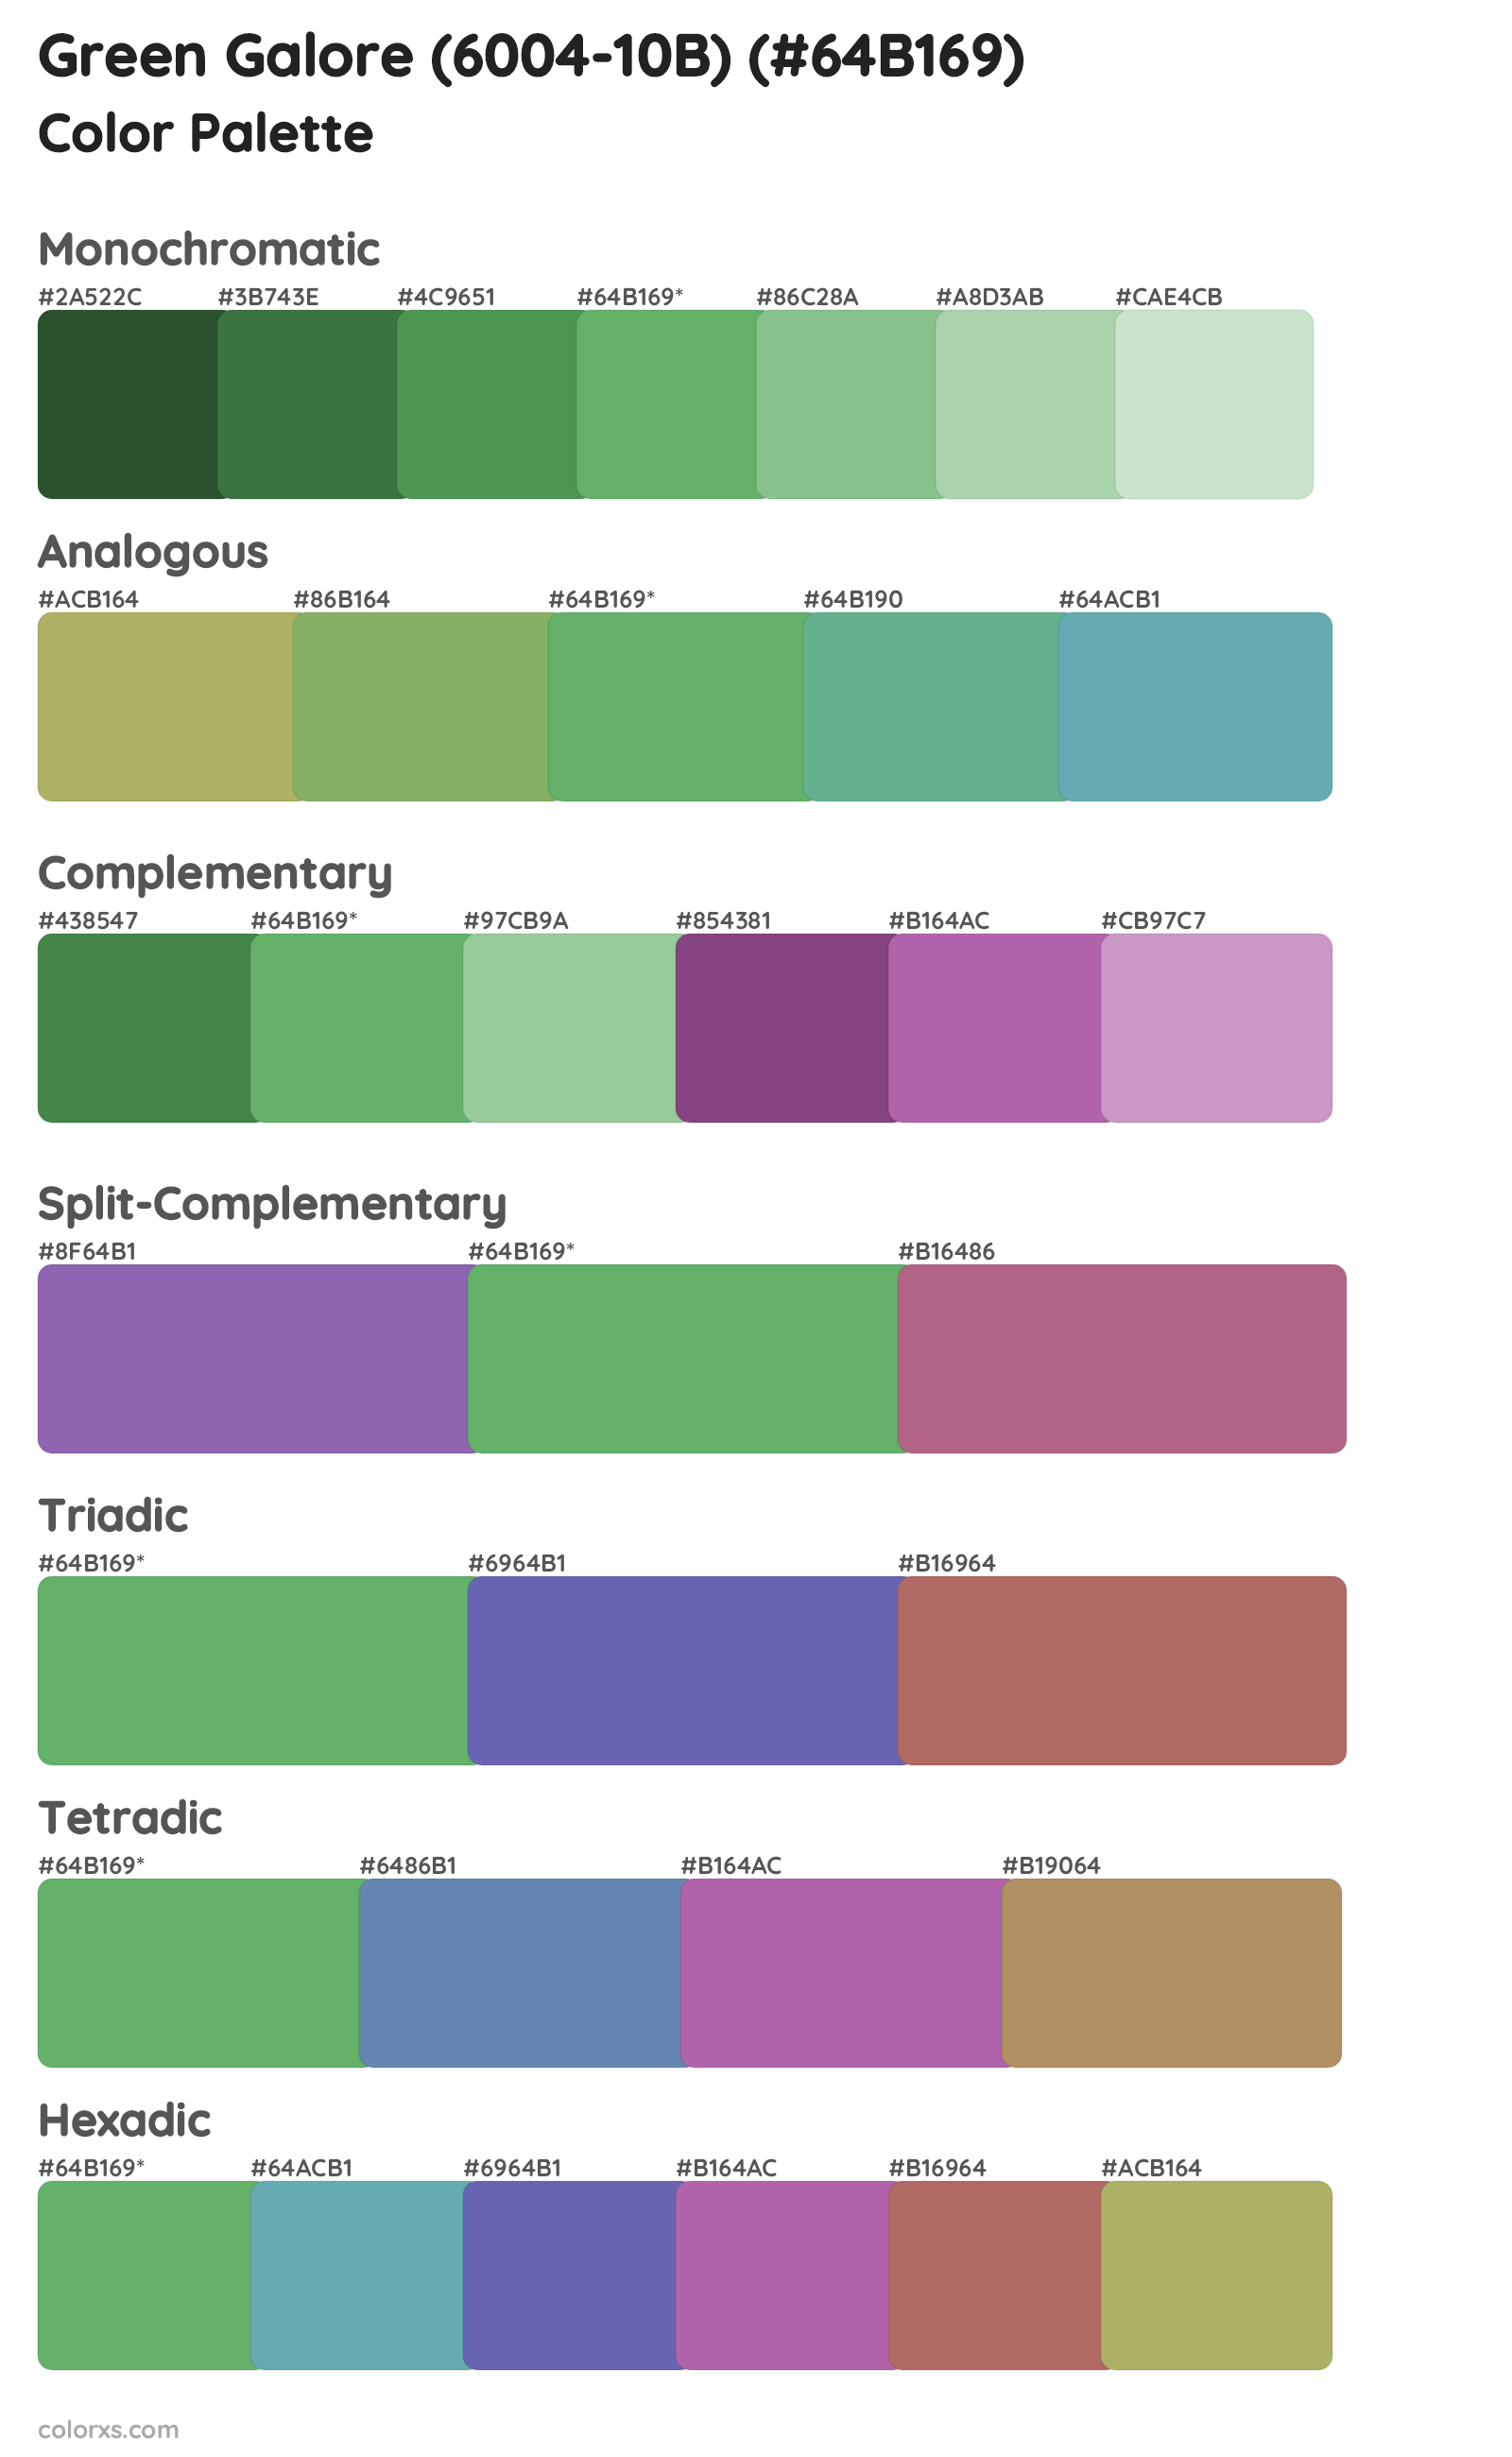 Green Galore (6004-10B) Color Scheme Palettes